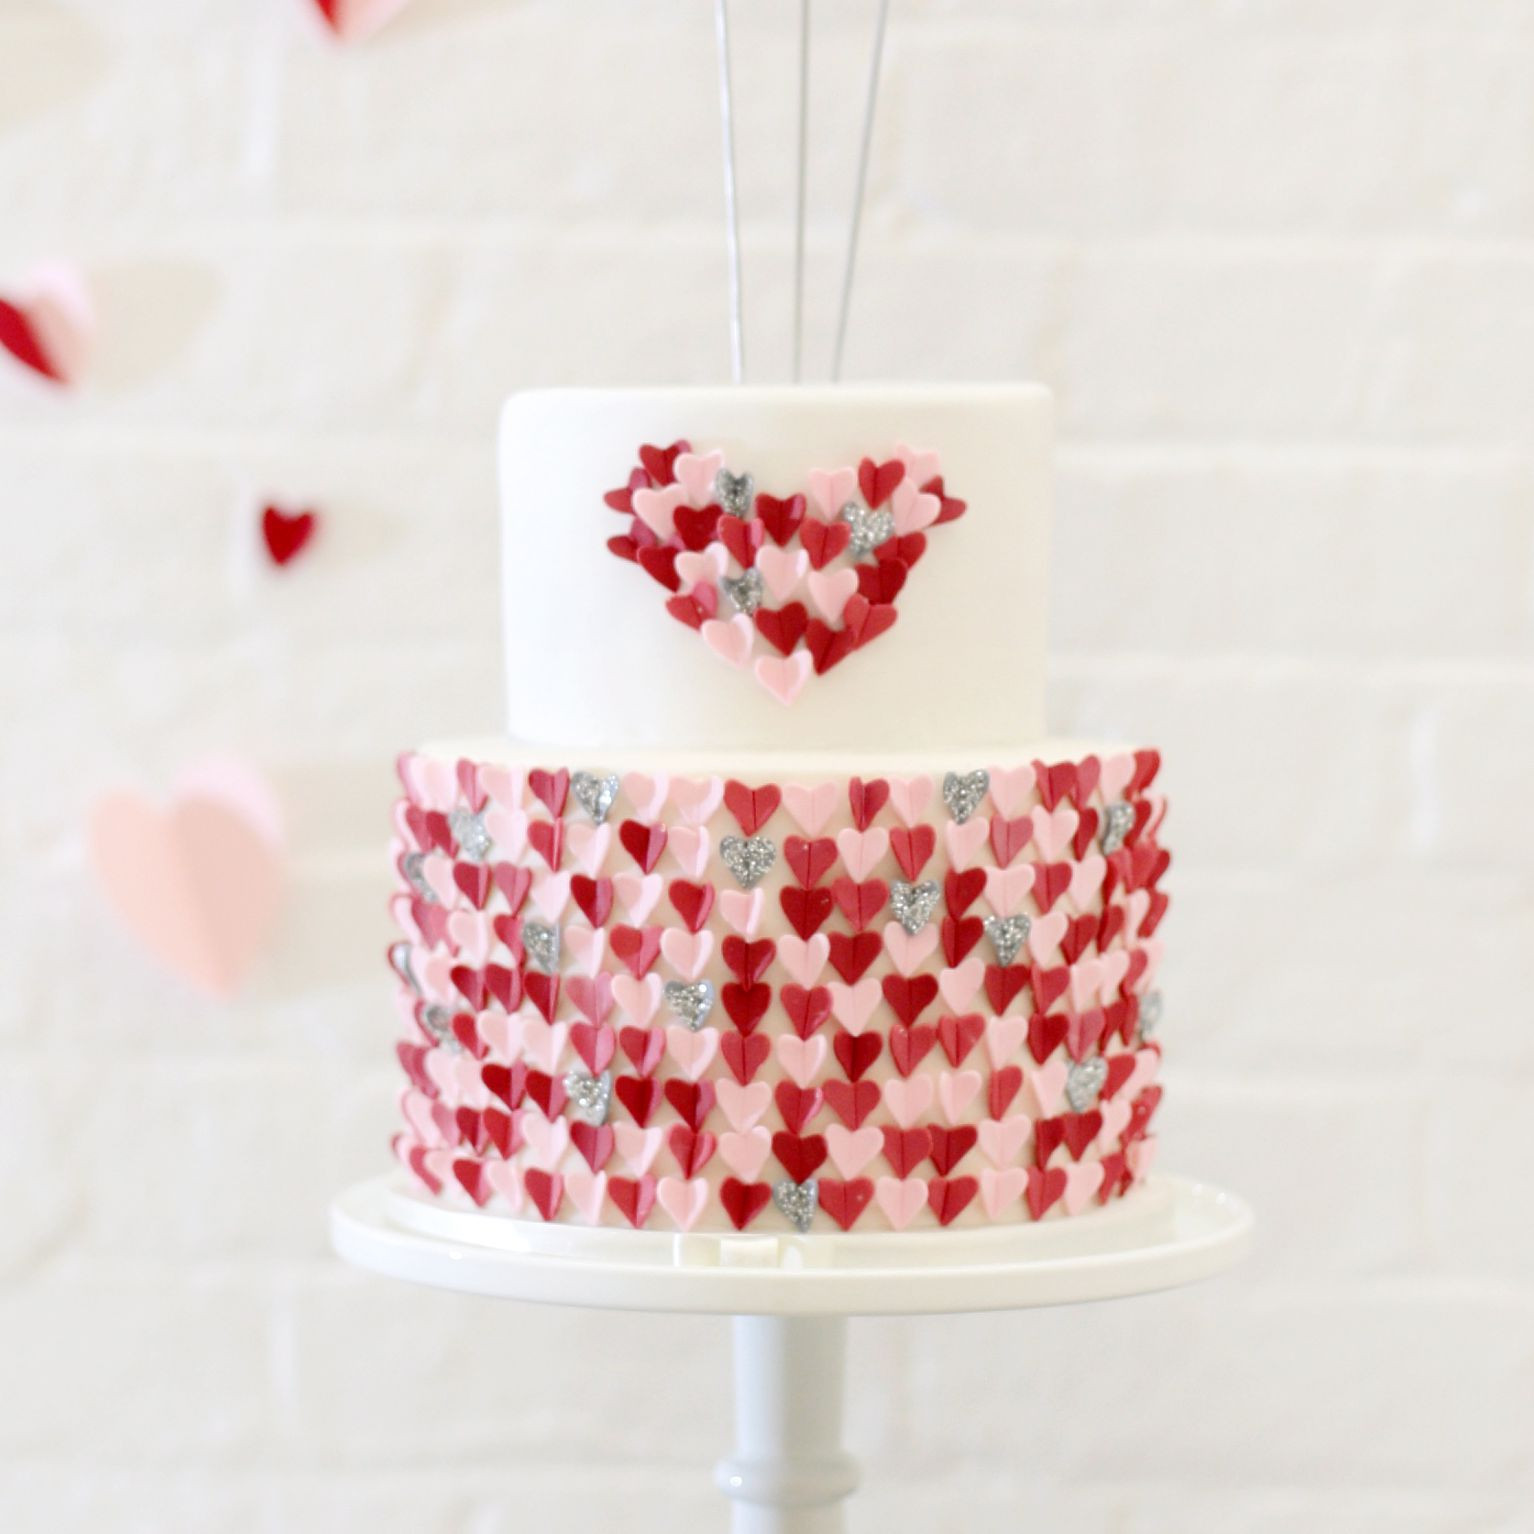 Valentines Day Wedding Cakes
 13 Romantic Valentine’s Day Wedding Cakes